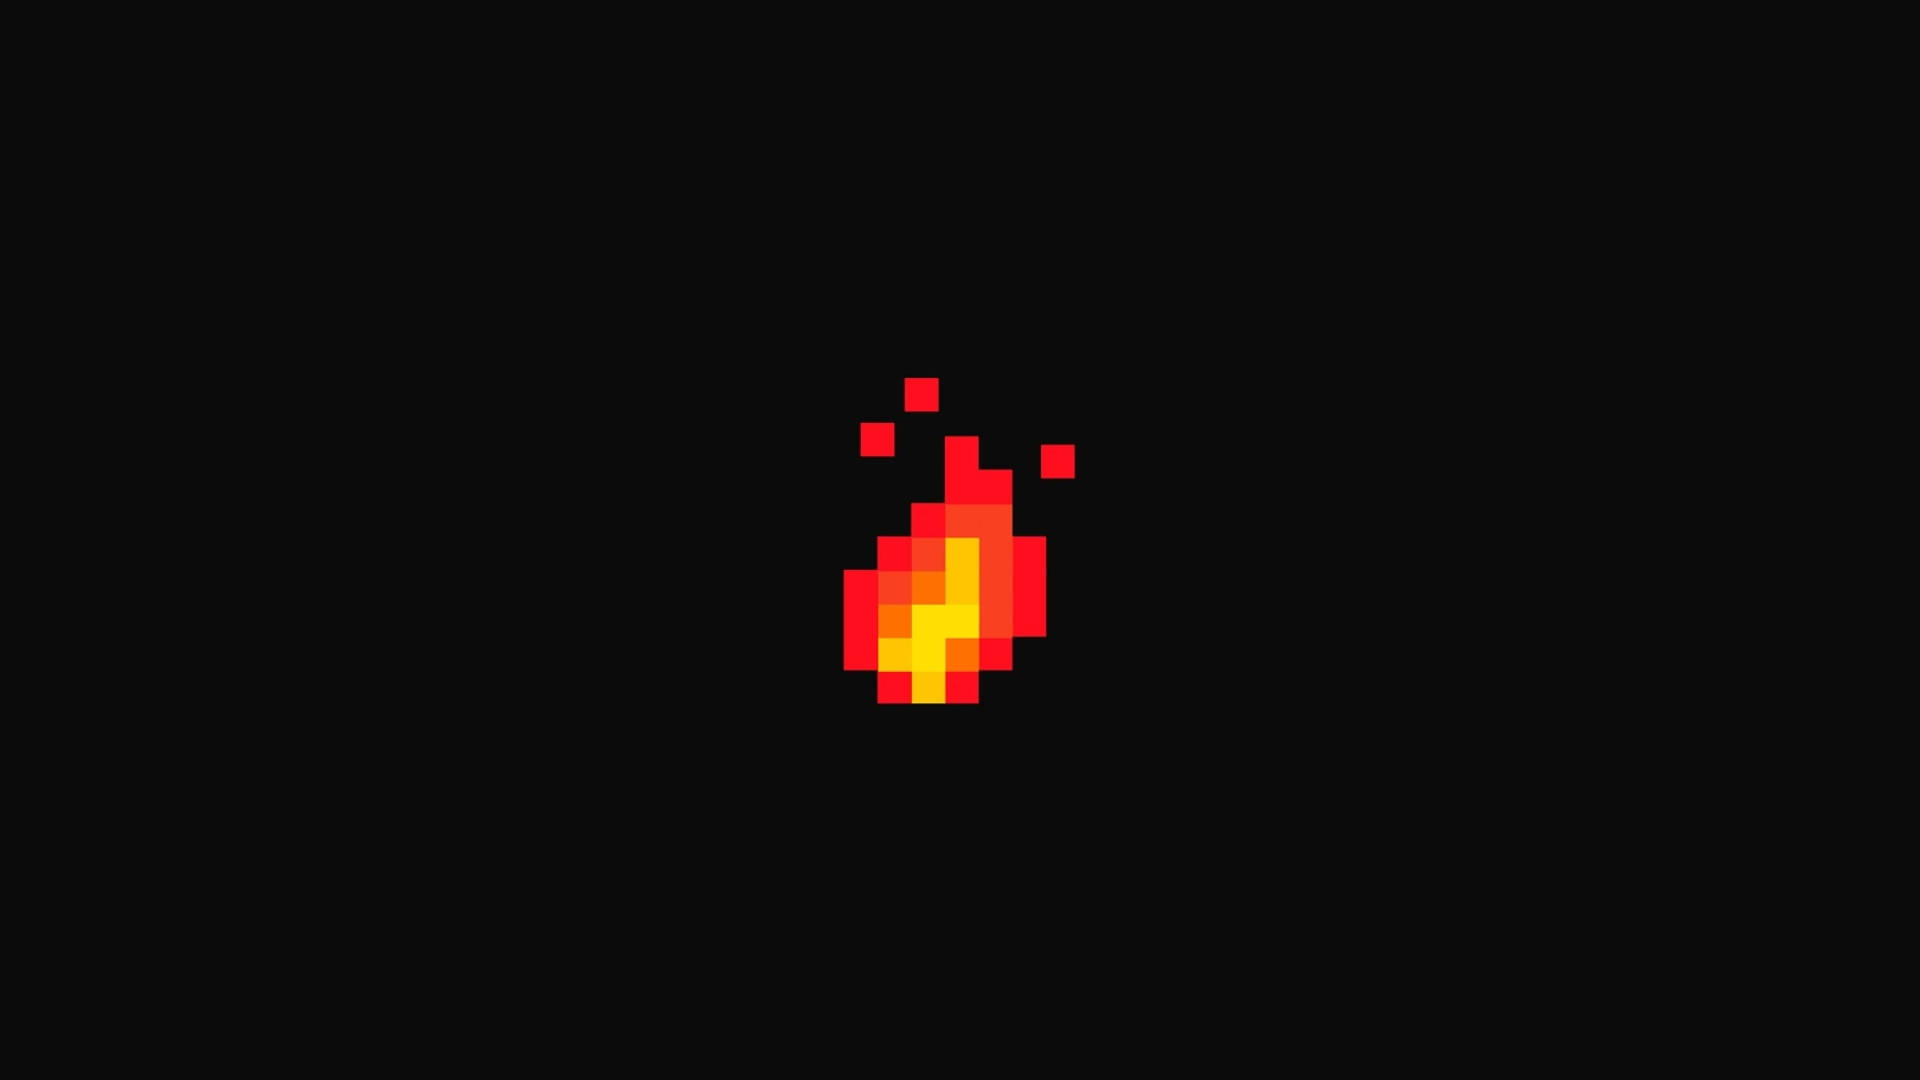 Blazing Fire In Aesthetic Pixel Art Wallpaper